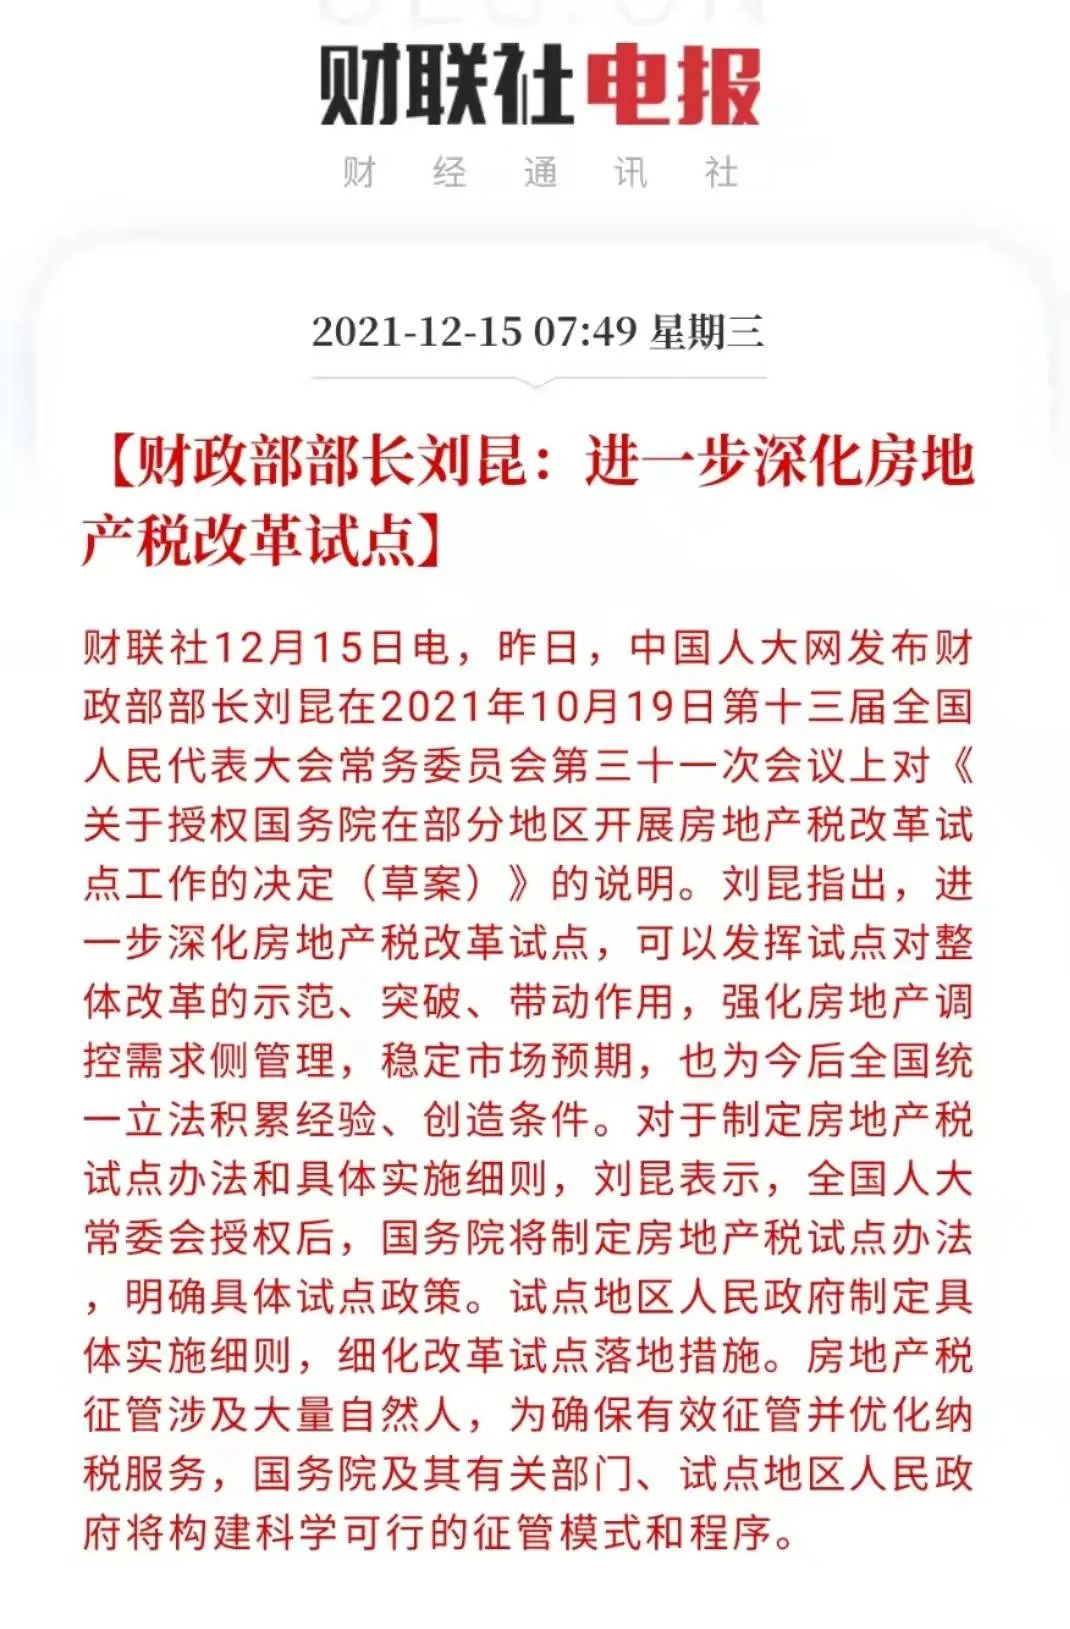 近日,中国人大网公开了两份房地产税改革试点相关文件,首次详解房地产